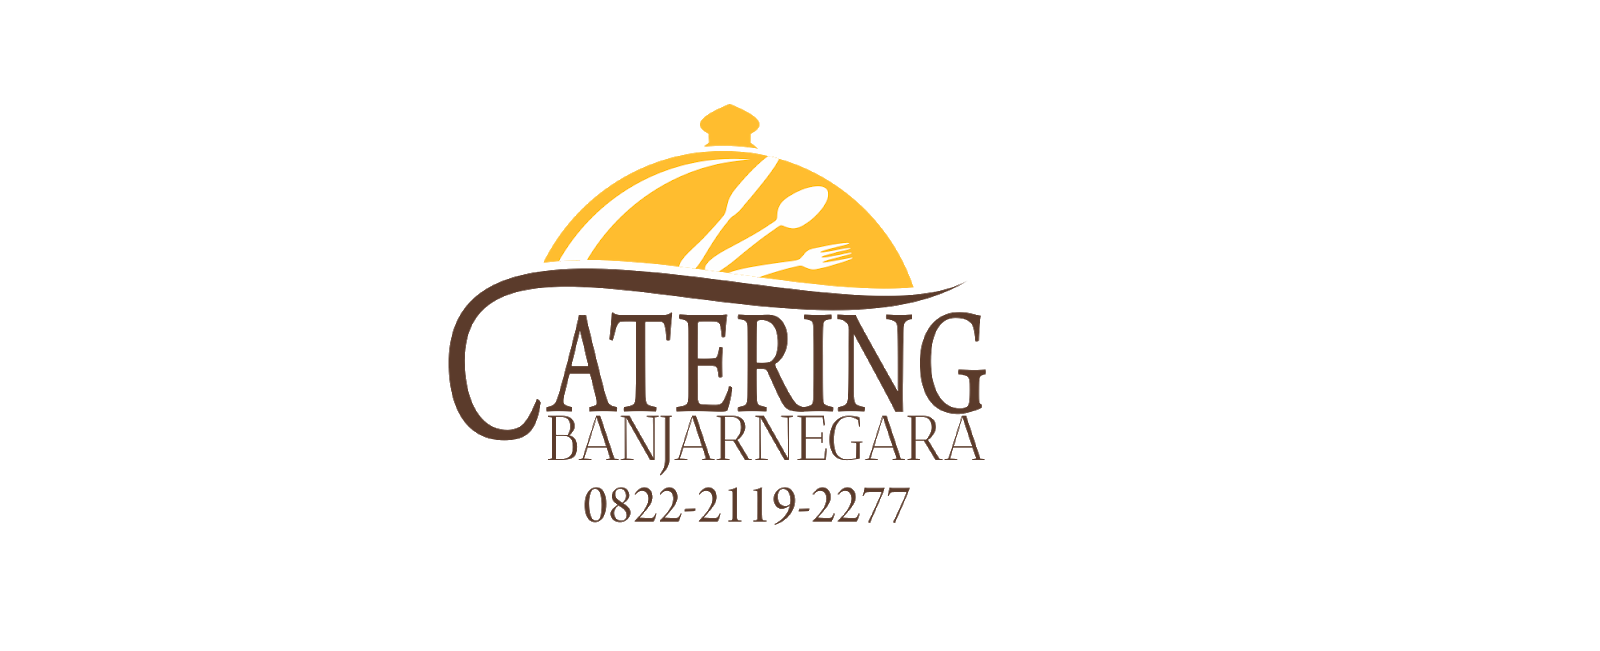 Catering Murah di Banjarnegara | 0822-2119-2277